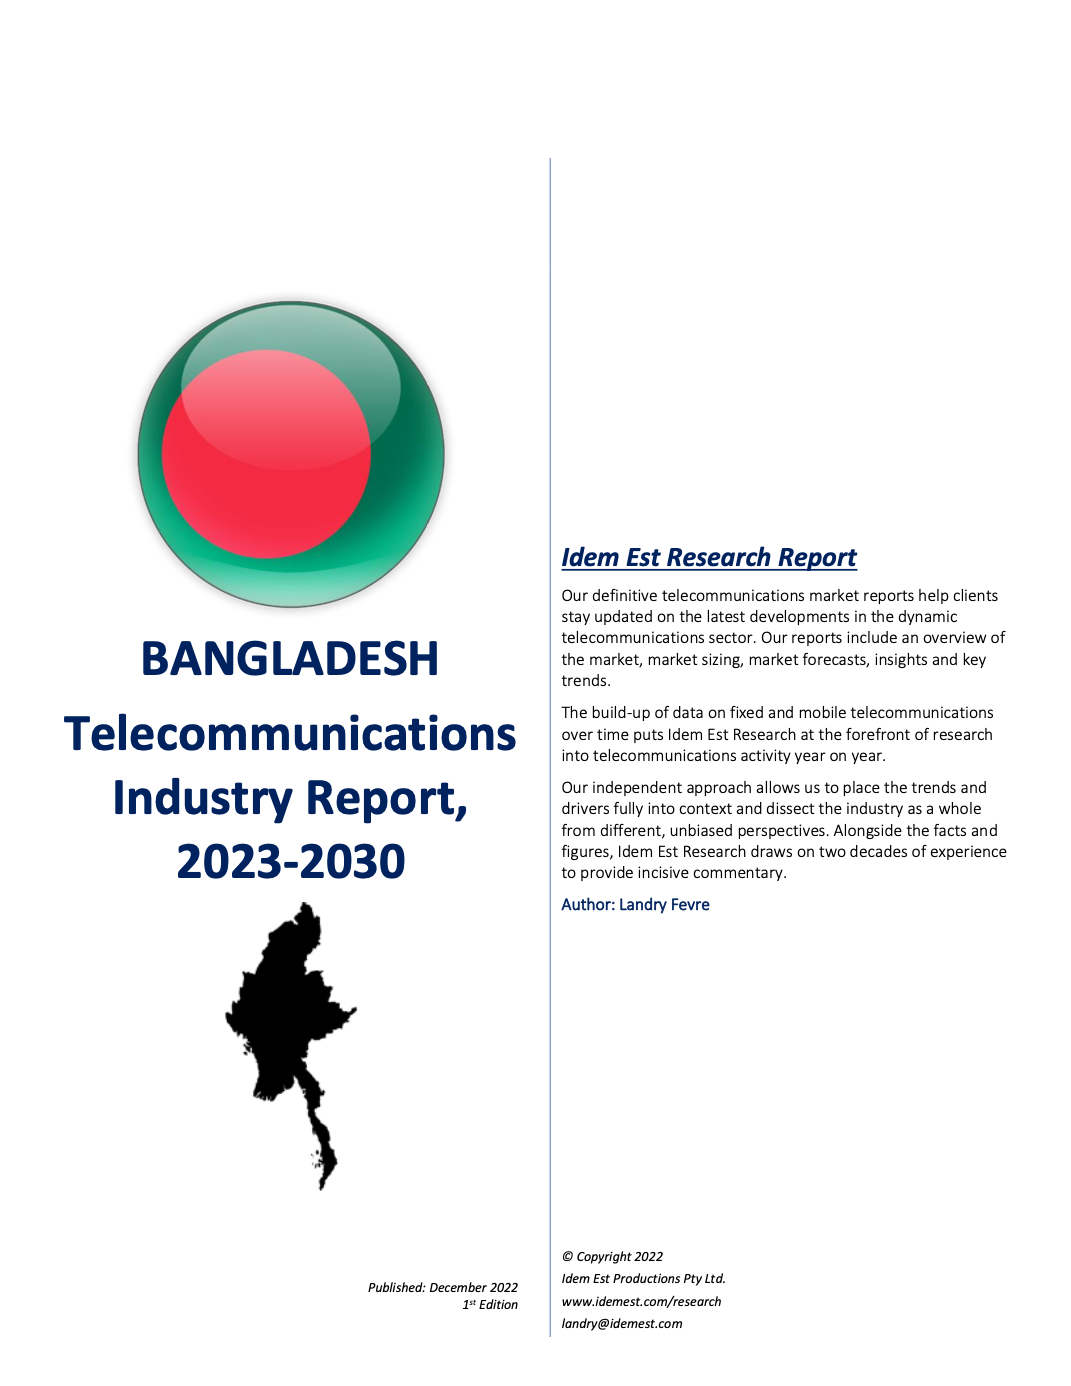 Bangladesh Telecommunications Market Report 2023 2030 